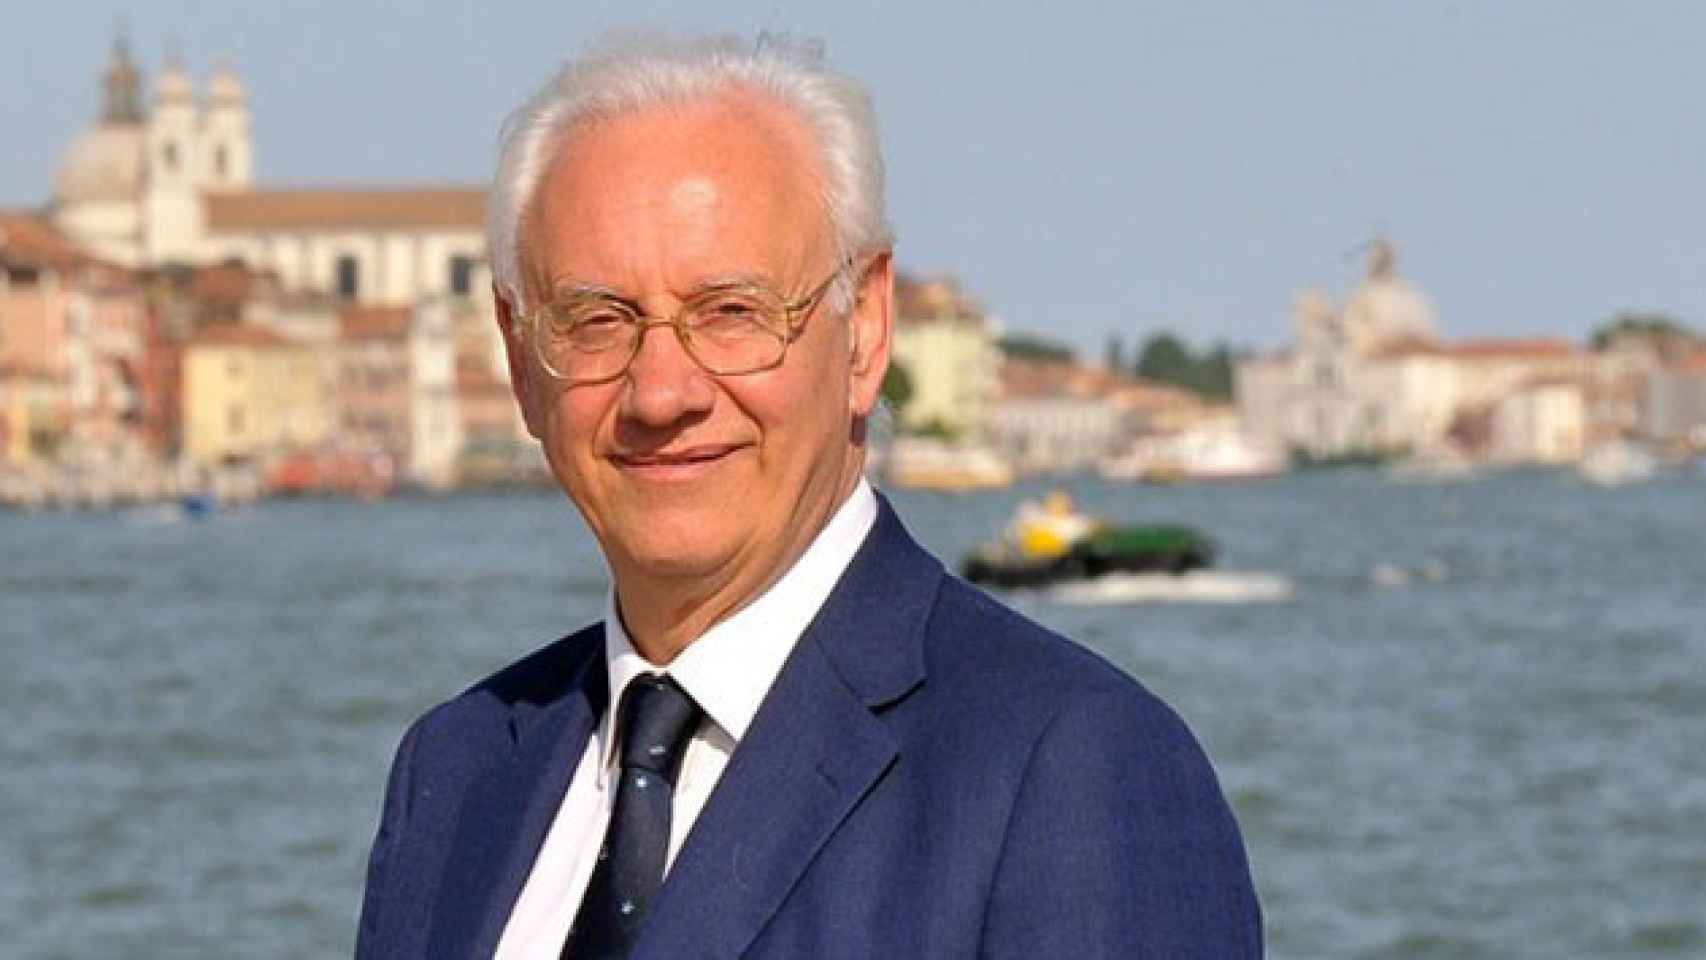 Paolo Costa, exalcalde de Venecia y presidente de la Autoridad Portuaria / CG